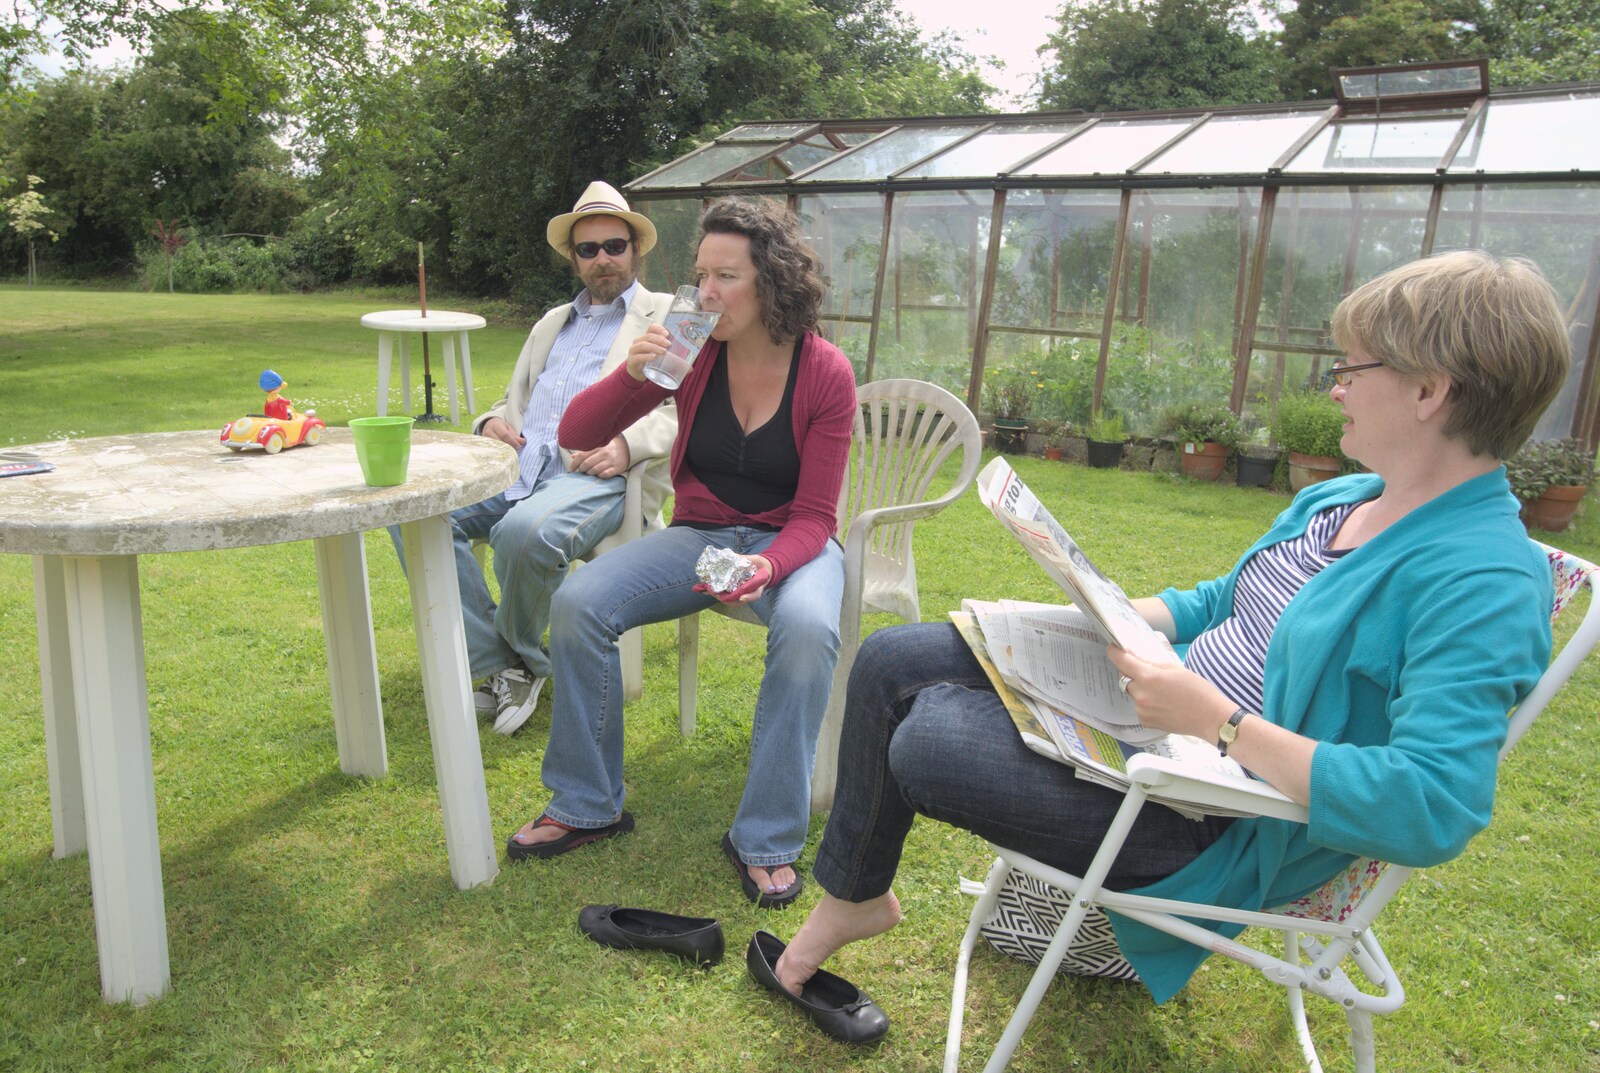 Noddy, Evelyn and Abbie in the garden from Summer Bike Rides, Thornham Magna, Suffolk - 1st June 2009